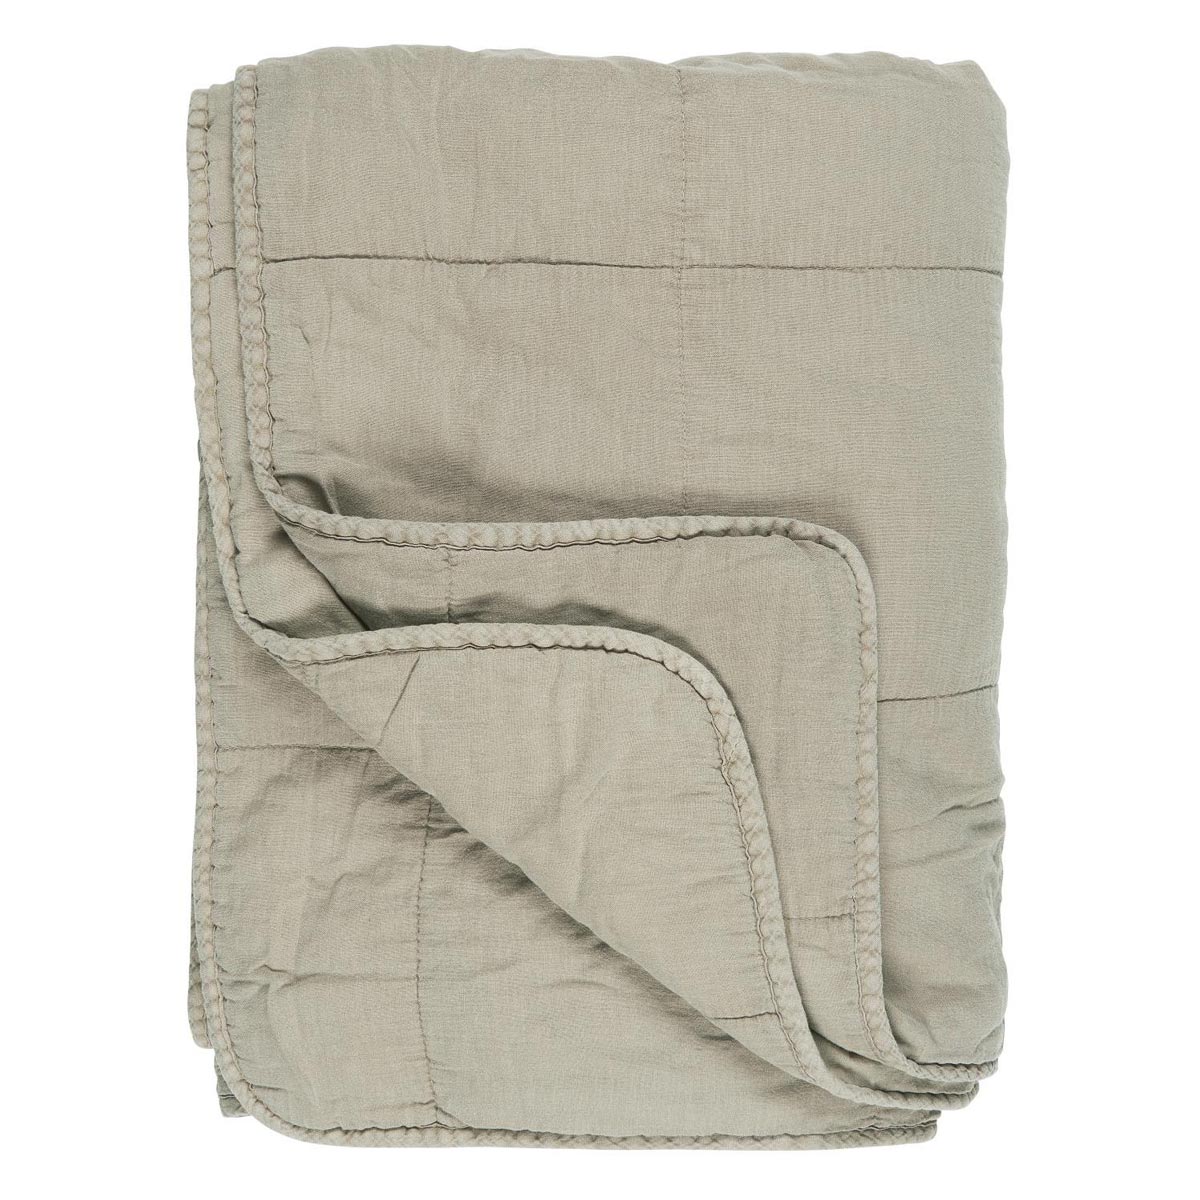 Vintage Quilt Linen